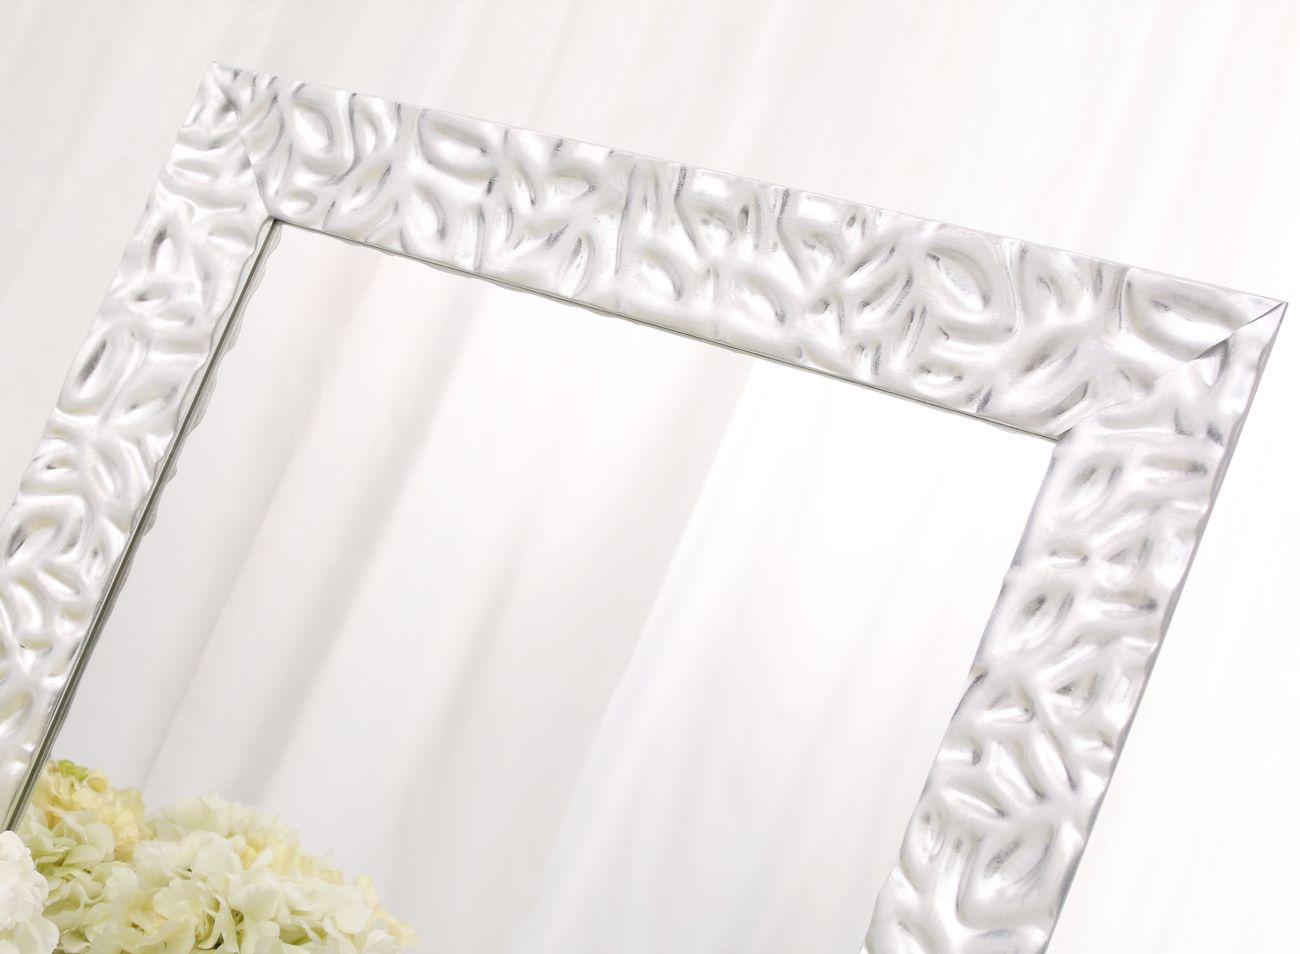 Zrcadlo v moderním stříbrném rámu s dekorem promačkávaných lístků  – detail | © Frame-it.cz